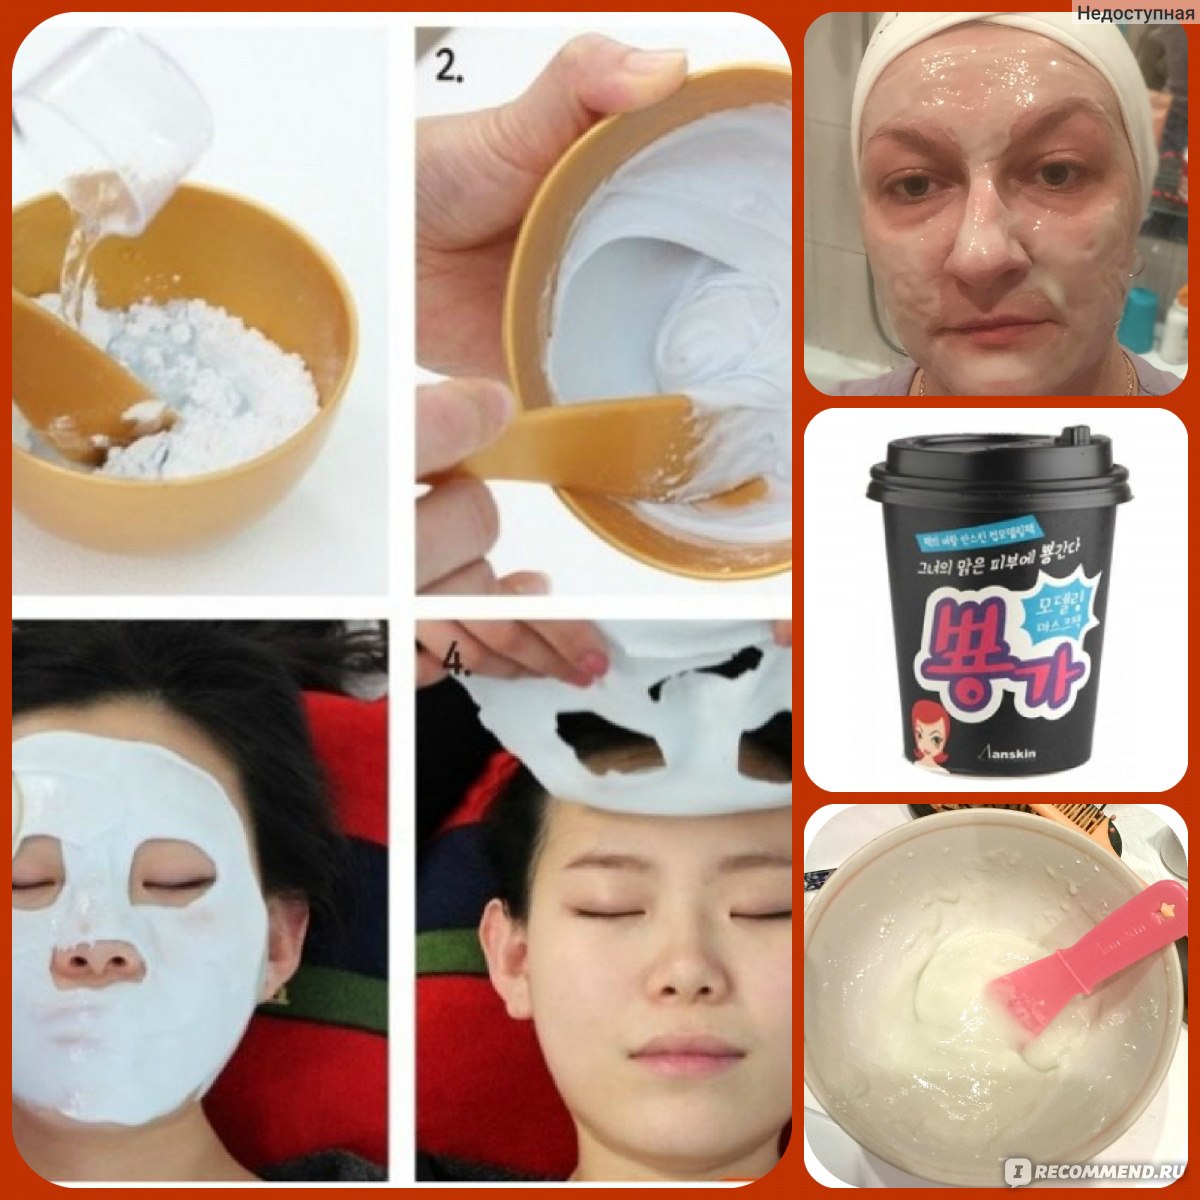 Как наносить альгинатную маску в домашних. Альгинатная маска кумихо. Альдегидная маска для лица Корея. Маски альгинатные для лица Корея.